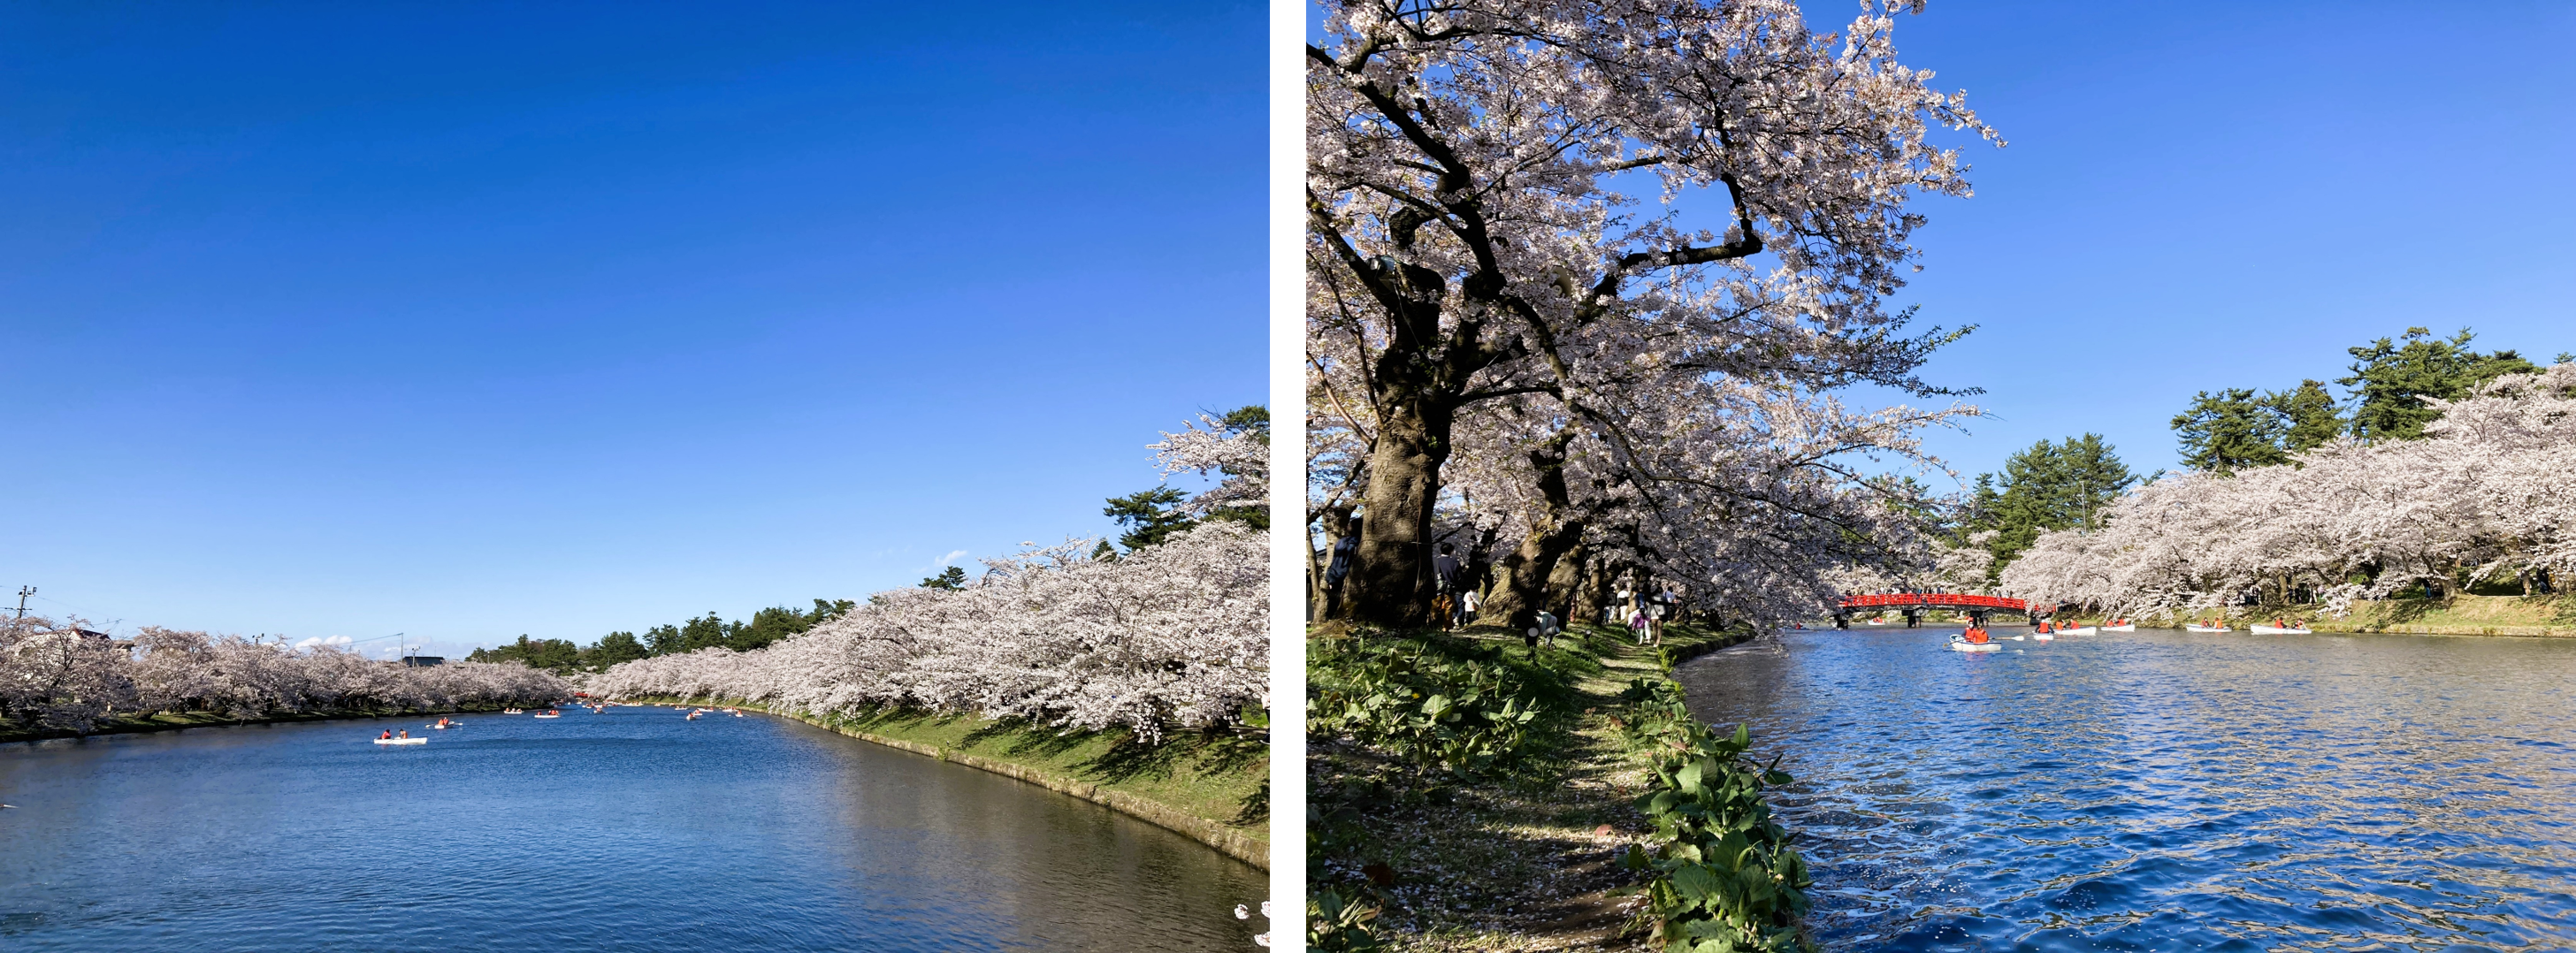 見どころ・花見スポット・楽しみ方！弘前さくらまつりは青森県弘前市の弘前公園（弘前城）で開催する、毎年約200万人がお花見を楽しむ日本一の桜祭りです。弘前さくらまつりの見どころ・お花見スポット・楽しみ方についてご紹介します。弘前公園の桜の名所・見どころ！弘前さくらまつり期間の弘前公園の朝、昼、夜の見どころや桜の開花状態別の楽しみ方をご紹介します。